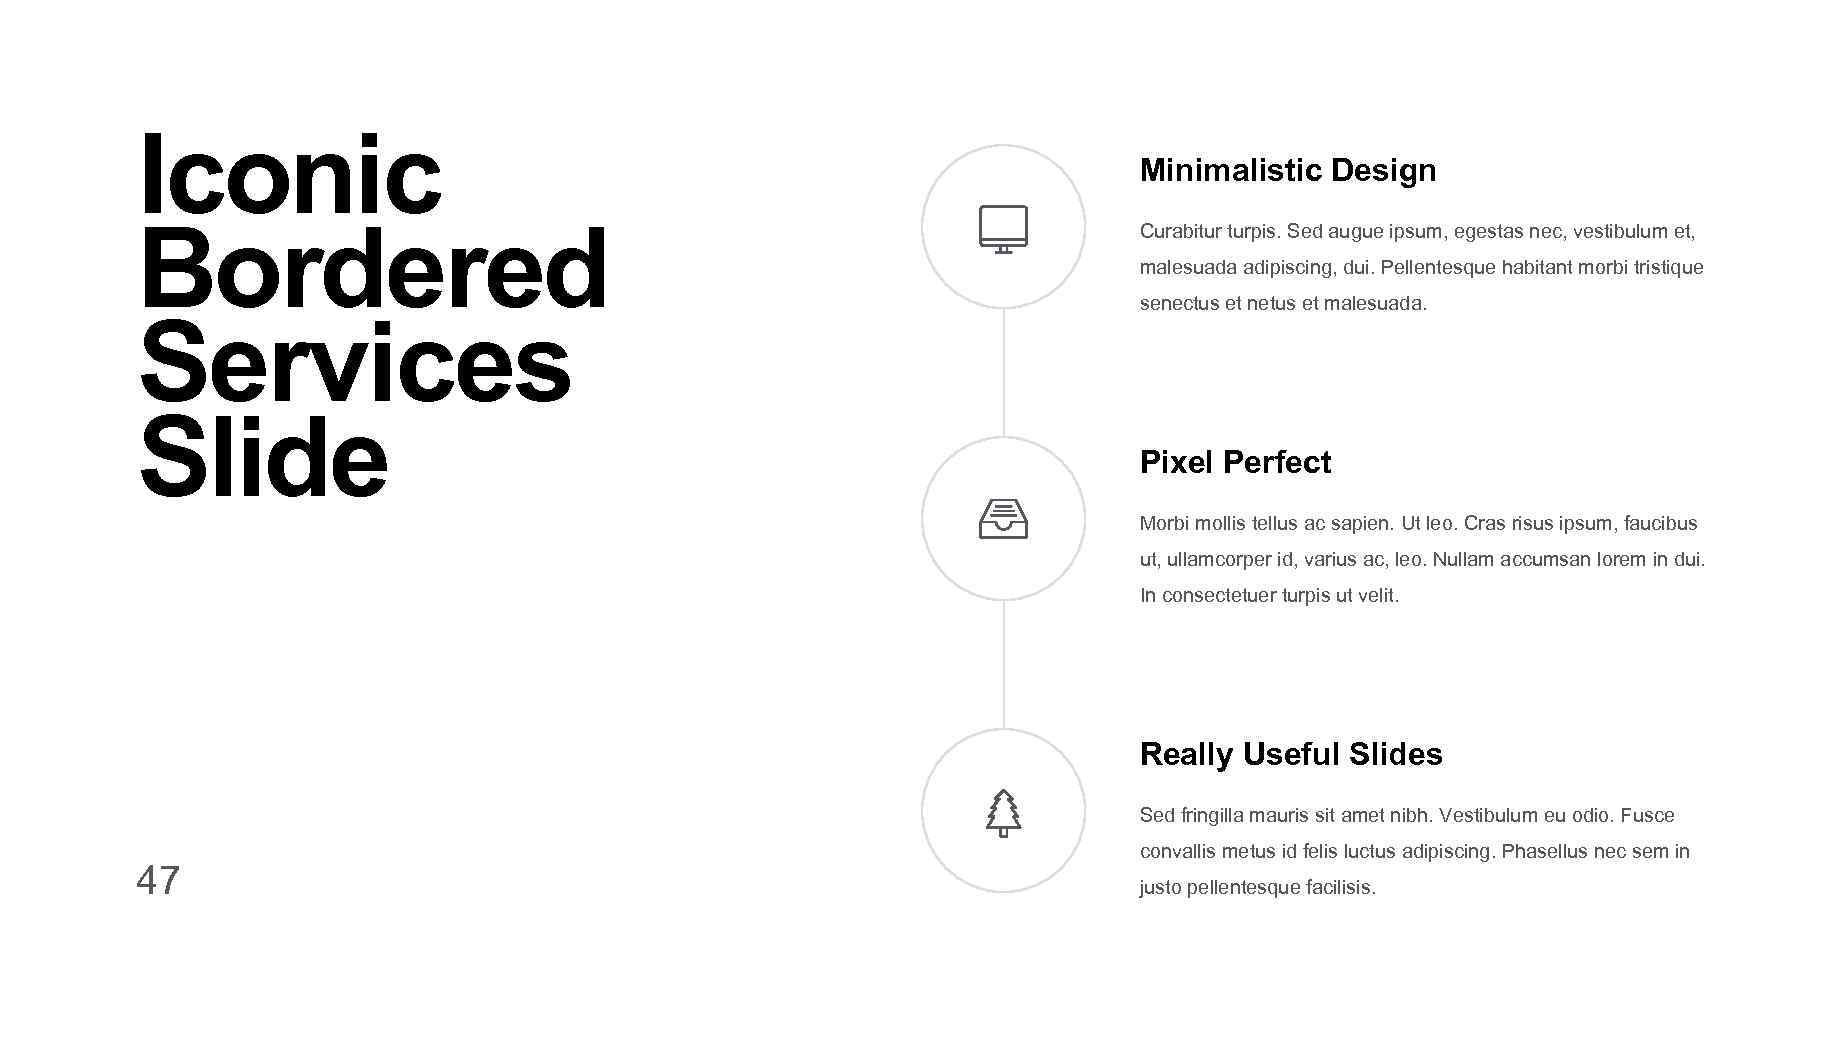 Iconic Bordered Services Slide Minimalistic Design Curabitur turpis. Sed augue ipsum, egestas nec, vestibulum